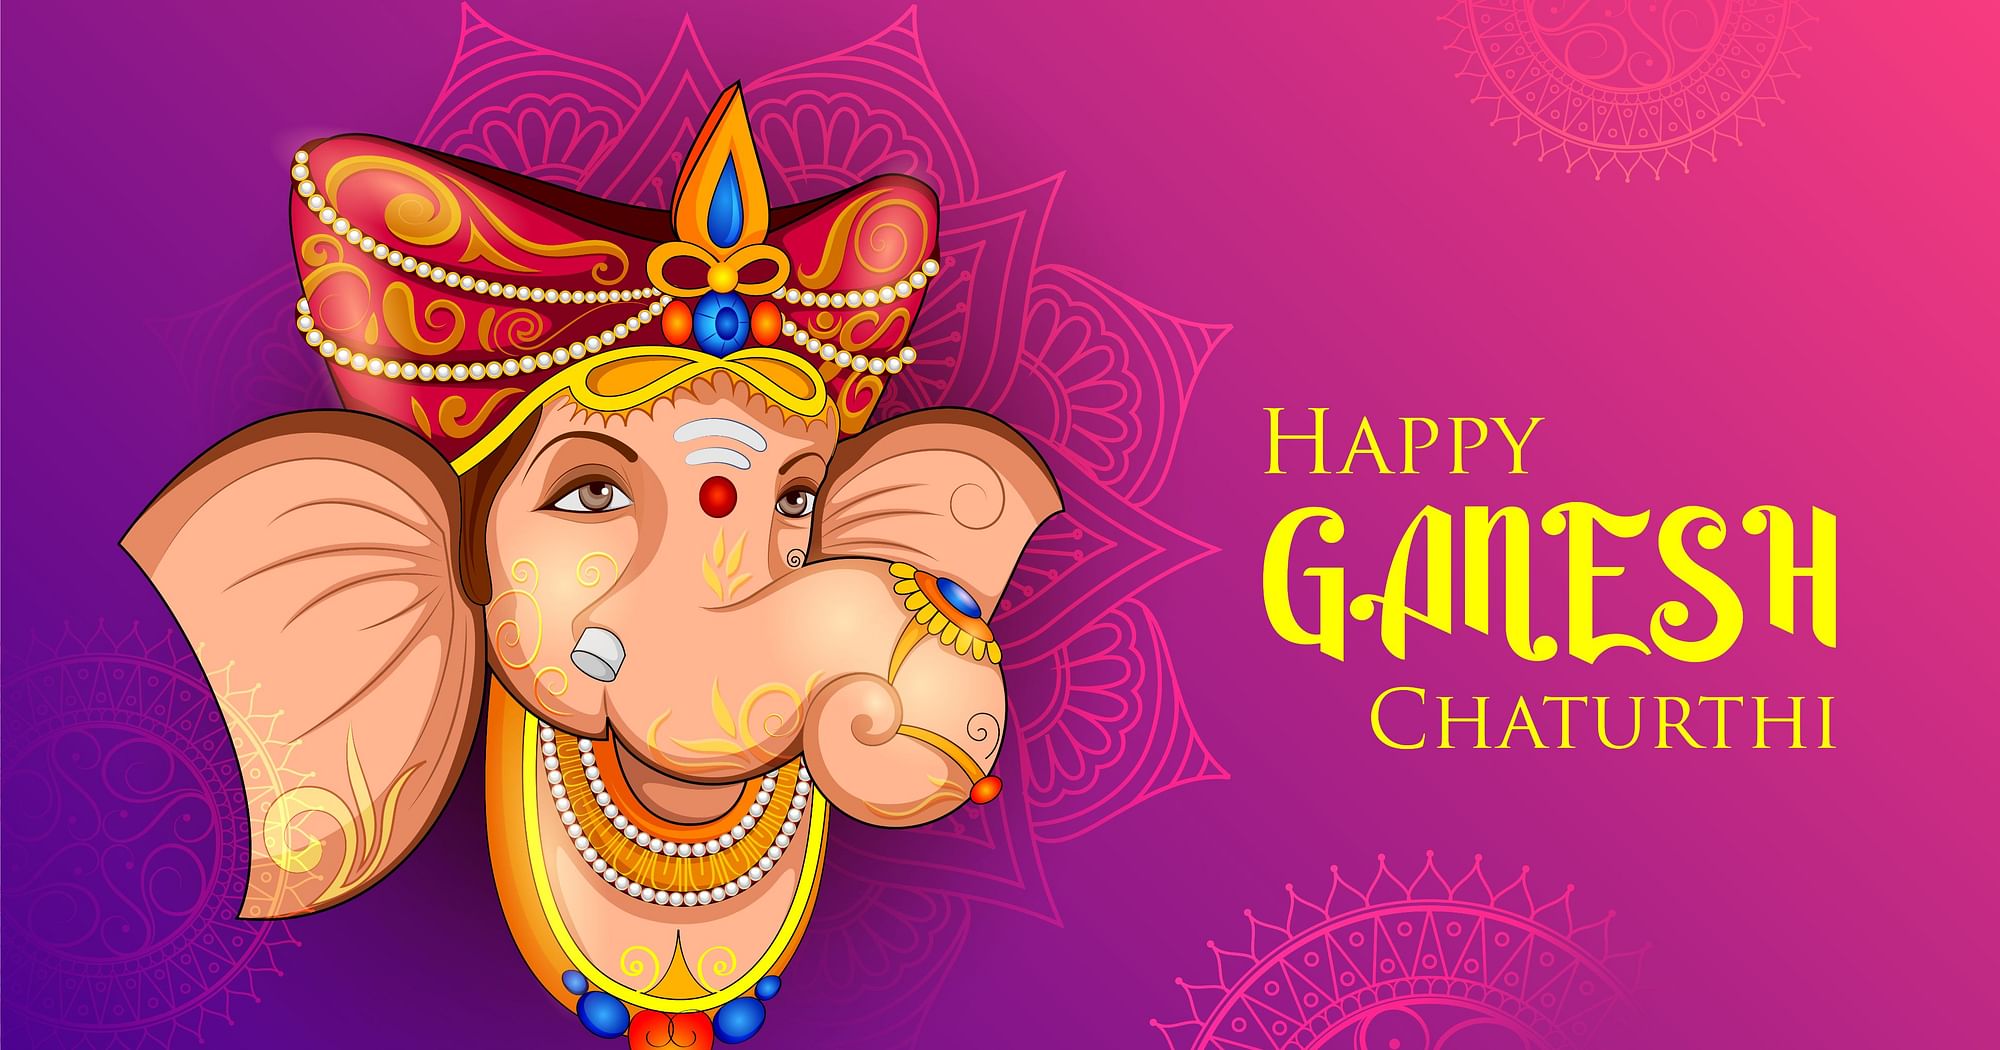 Ganesh Chaturthi 2021, Ganesh Chaturthi Wishes and Images  Happy ganesh  chaturthi, Happy ganesh chaturthi images, Happy ganesh chaturthi wishes